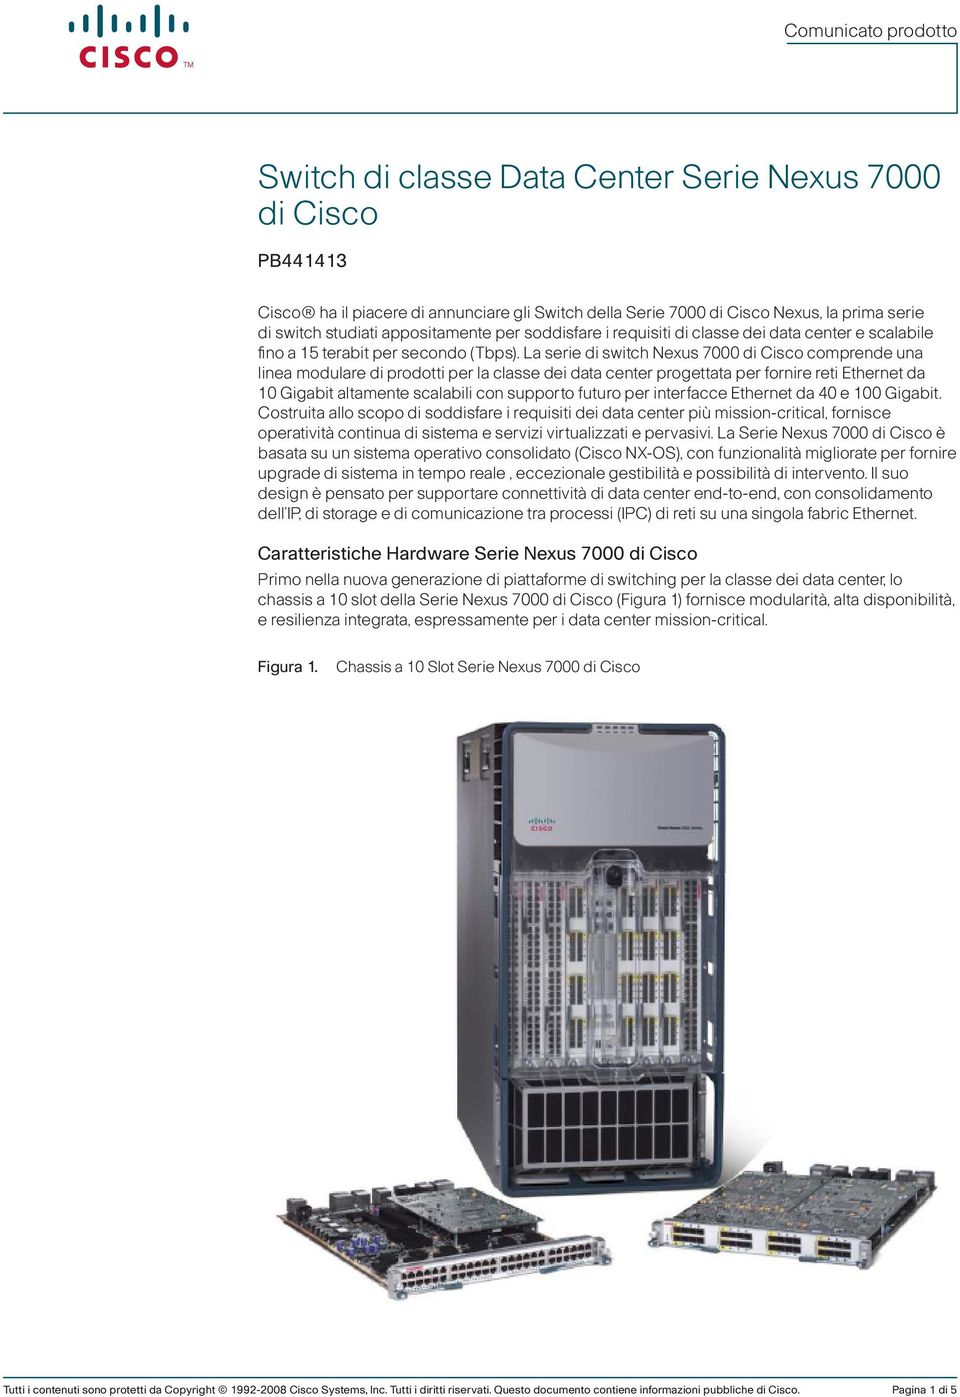 La serie di switch Nexus 7000 di Cisco comprende una linea modulare di prodotti per la classe dei data center progettata per fornire reti Ethernet da 10 Gigabit altamente scalabili con supporto